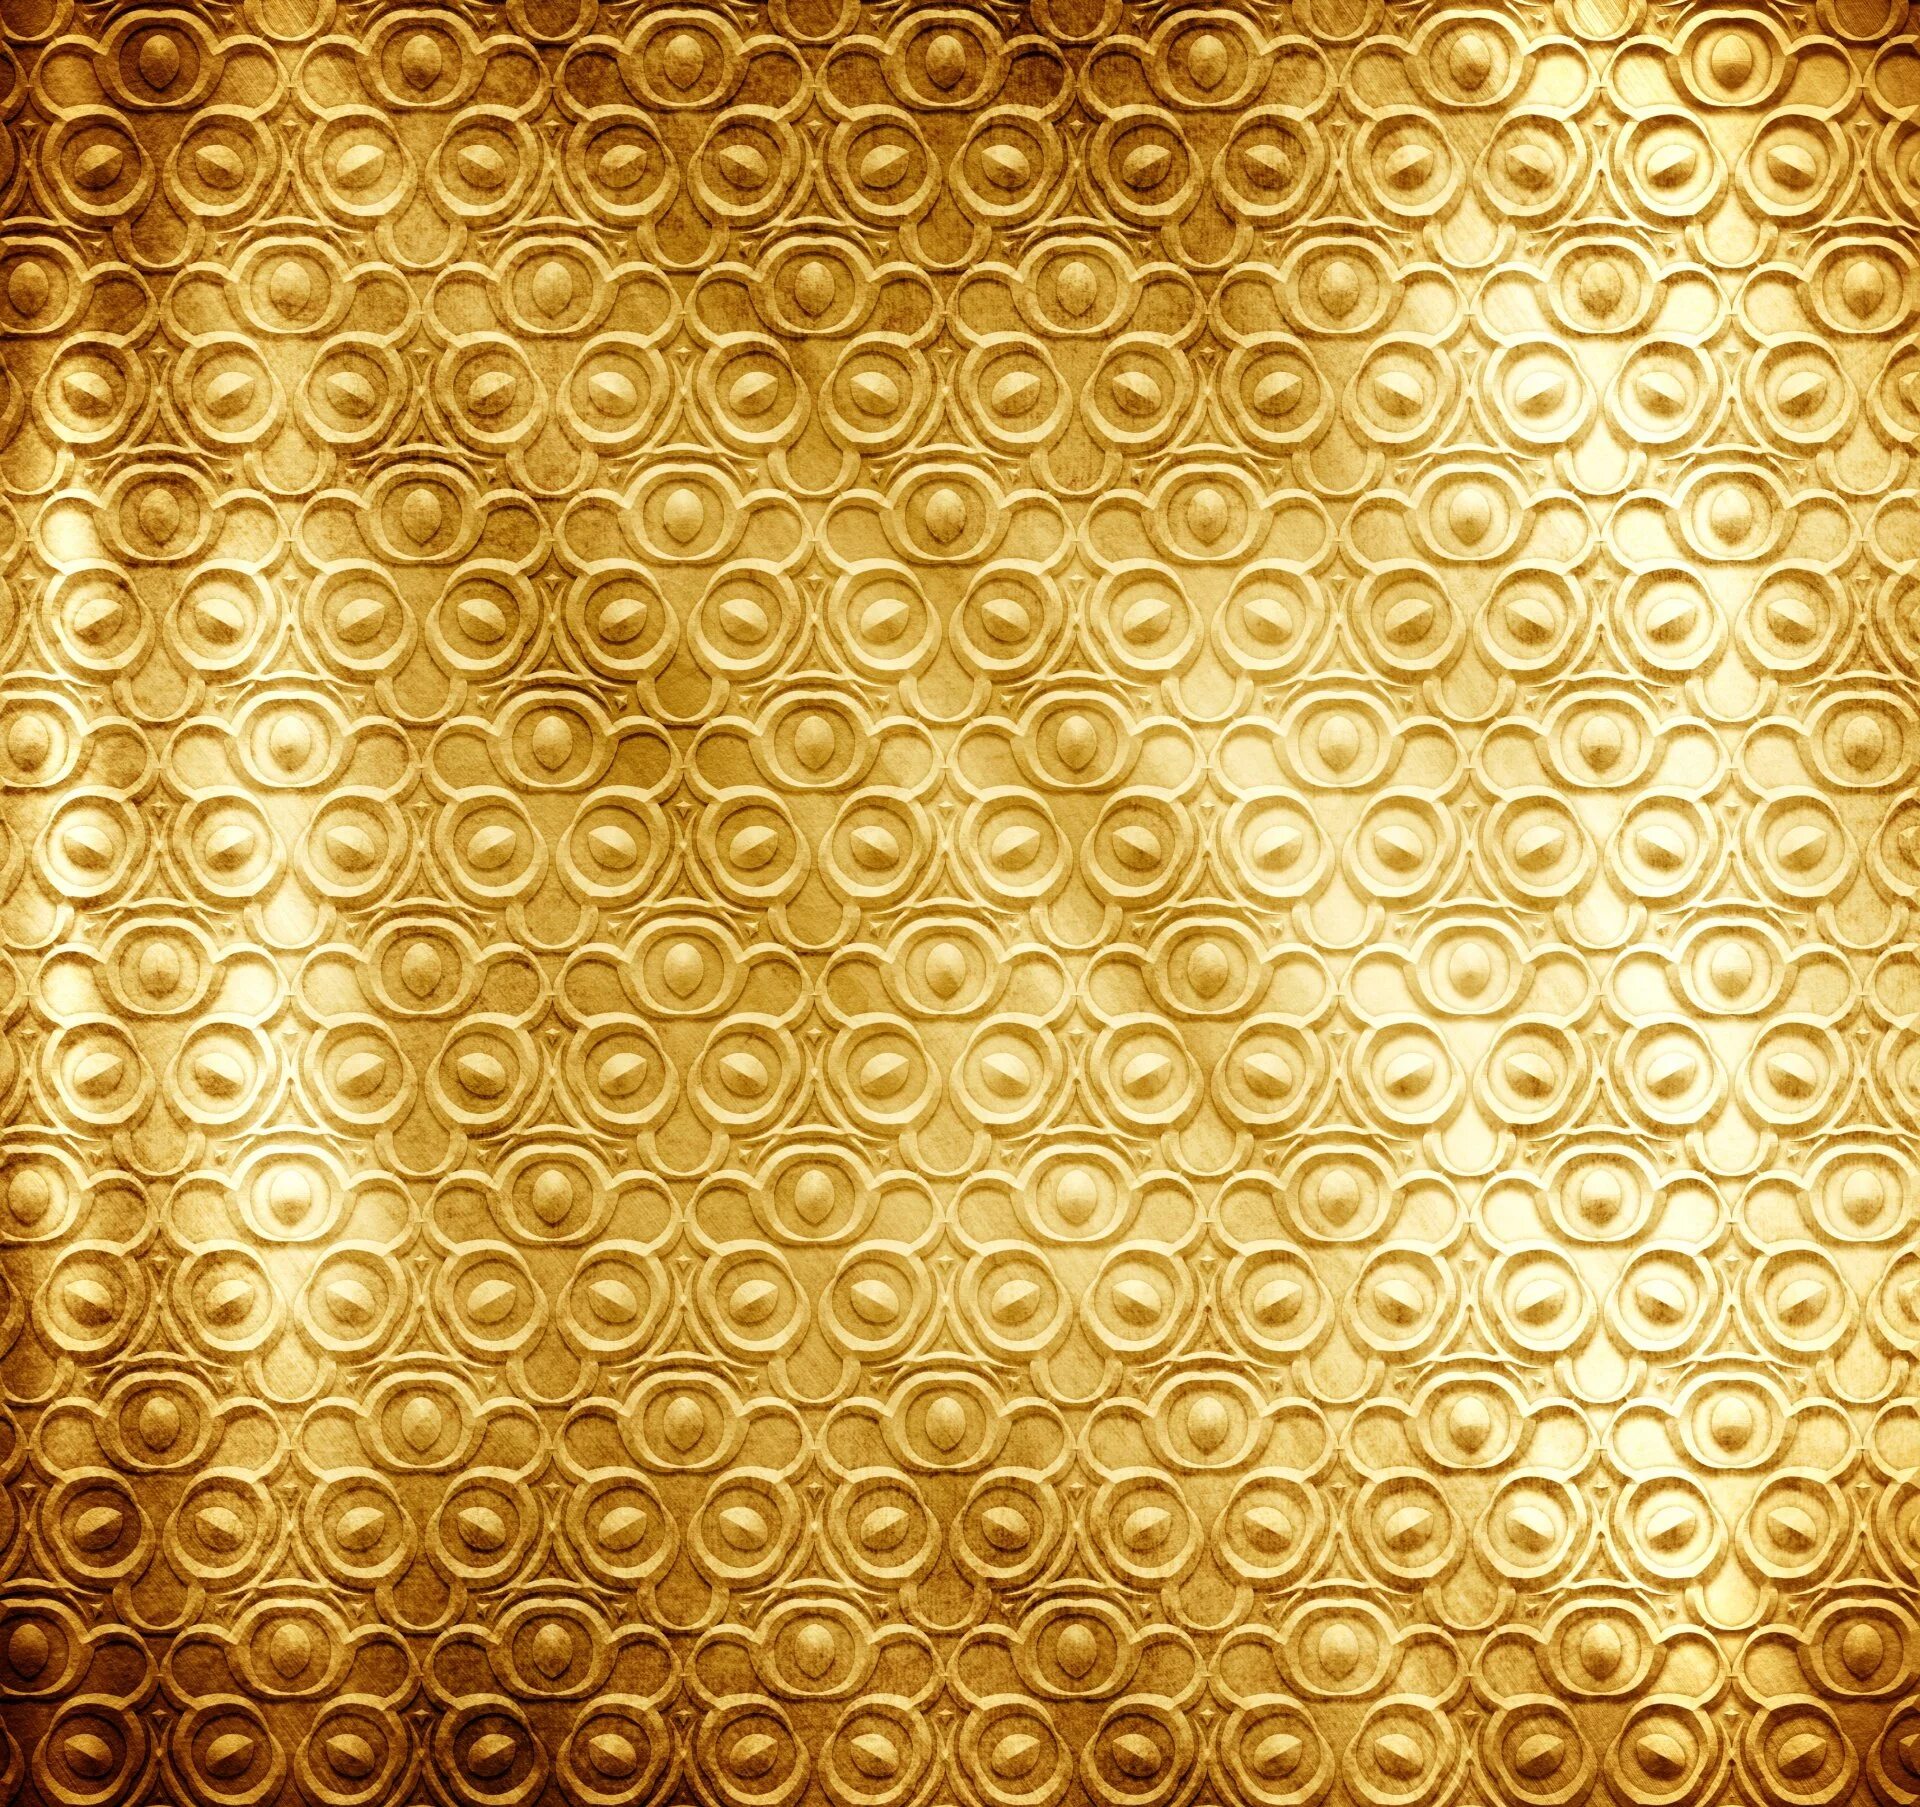 Узоры на золотом фоне. Золотистый фон. Золотой орнамент. Золото текстура. Узор золото.